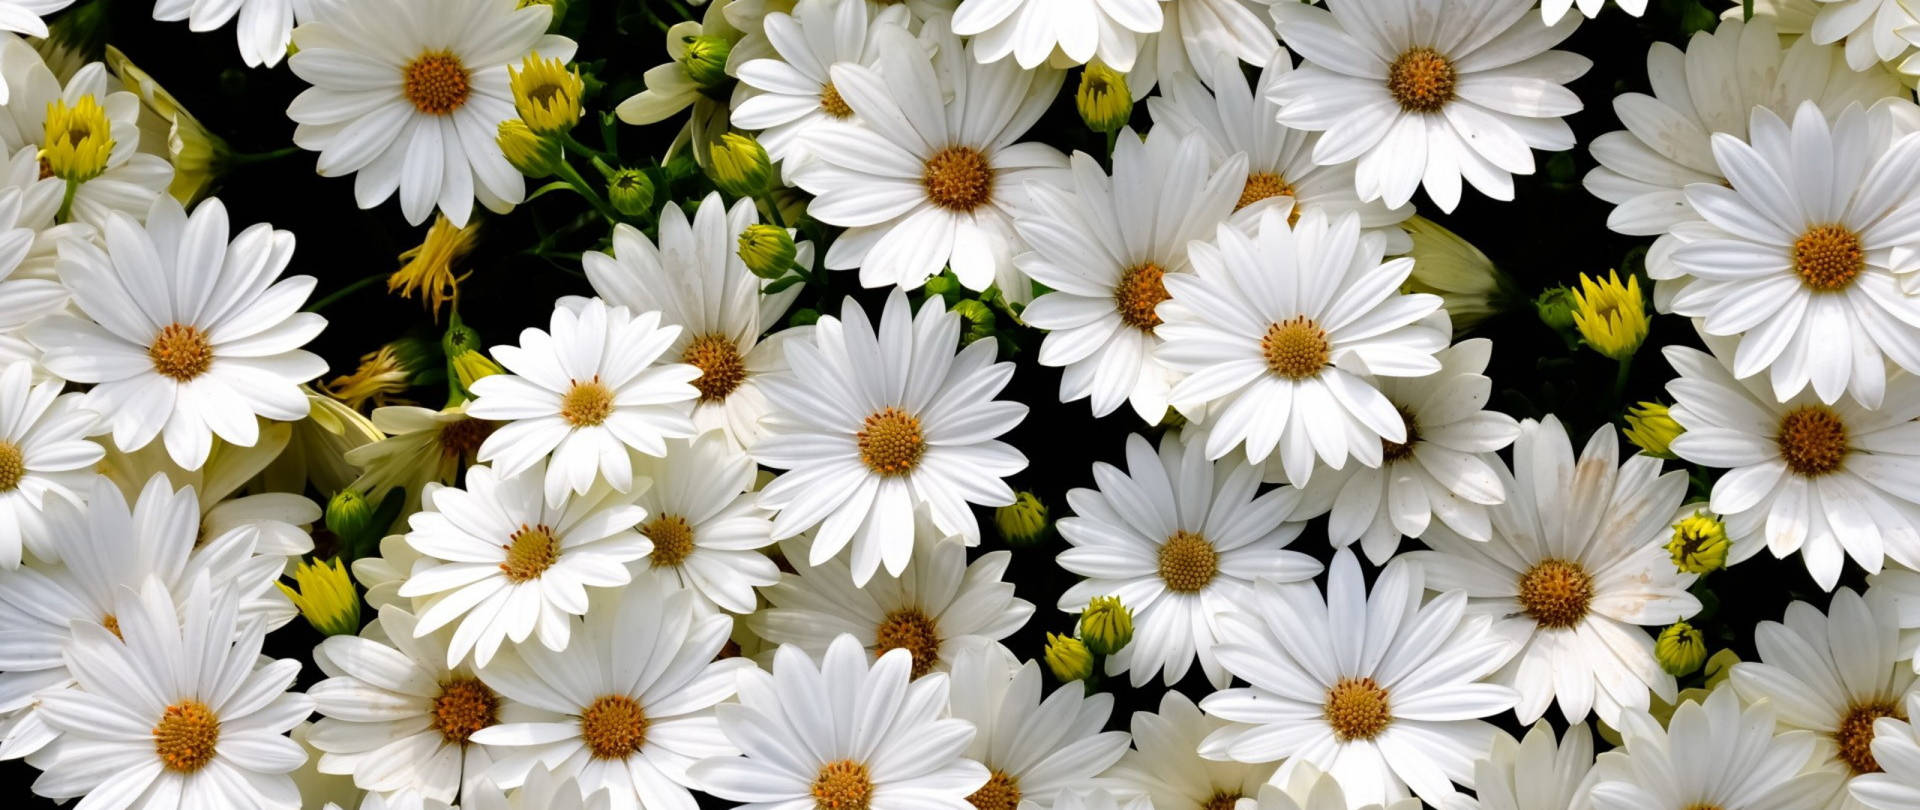 Daisies wallpaper: Hình nền hoa cúc sẽ mang lại cho bạn một trang chủ mới tinh! Ảnh daisies wallpaper với hình ảnh hoa cúc đầy tươi sáng và sinh động sẽ làm cho không gian sống của bạn trở nên vui vẻ và rực rỡ.